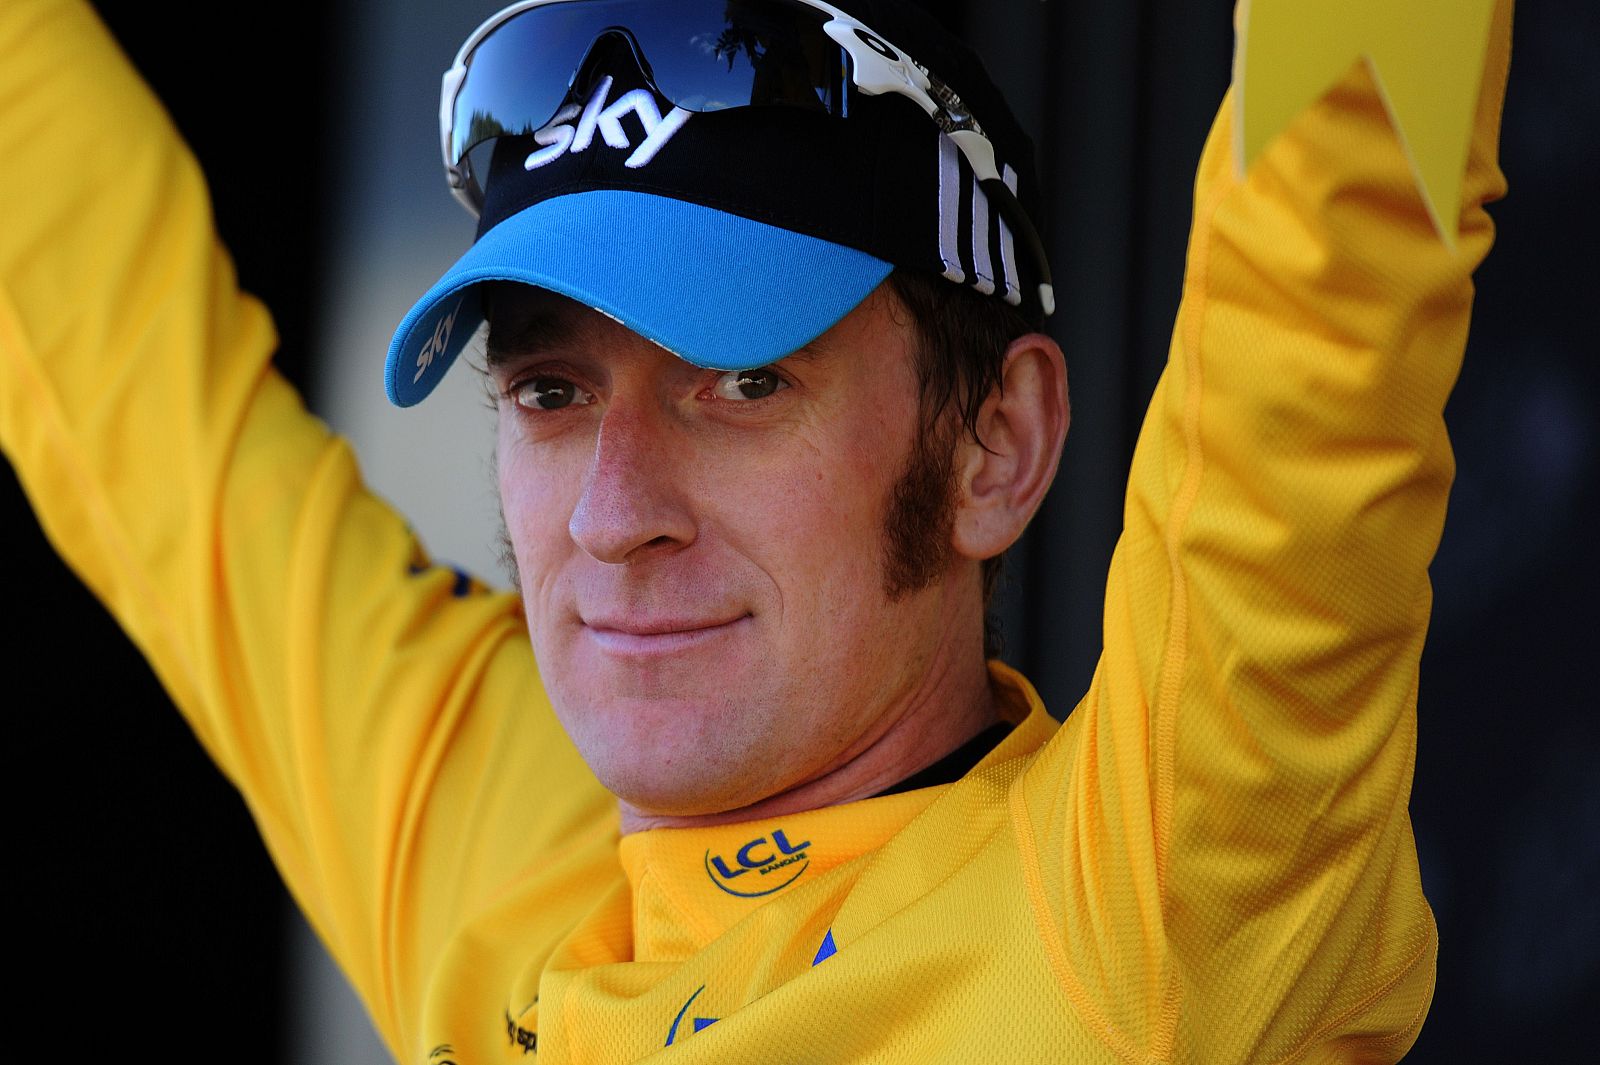 Imagen del nuevo líder del Tour de Francia Bradley Wiggins.